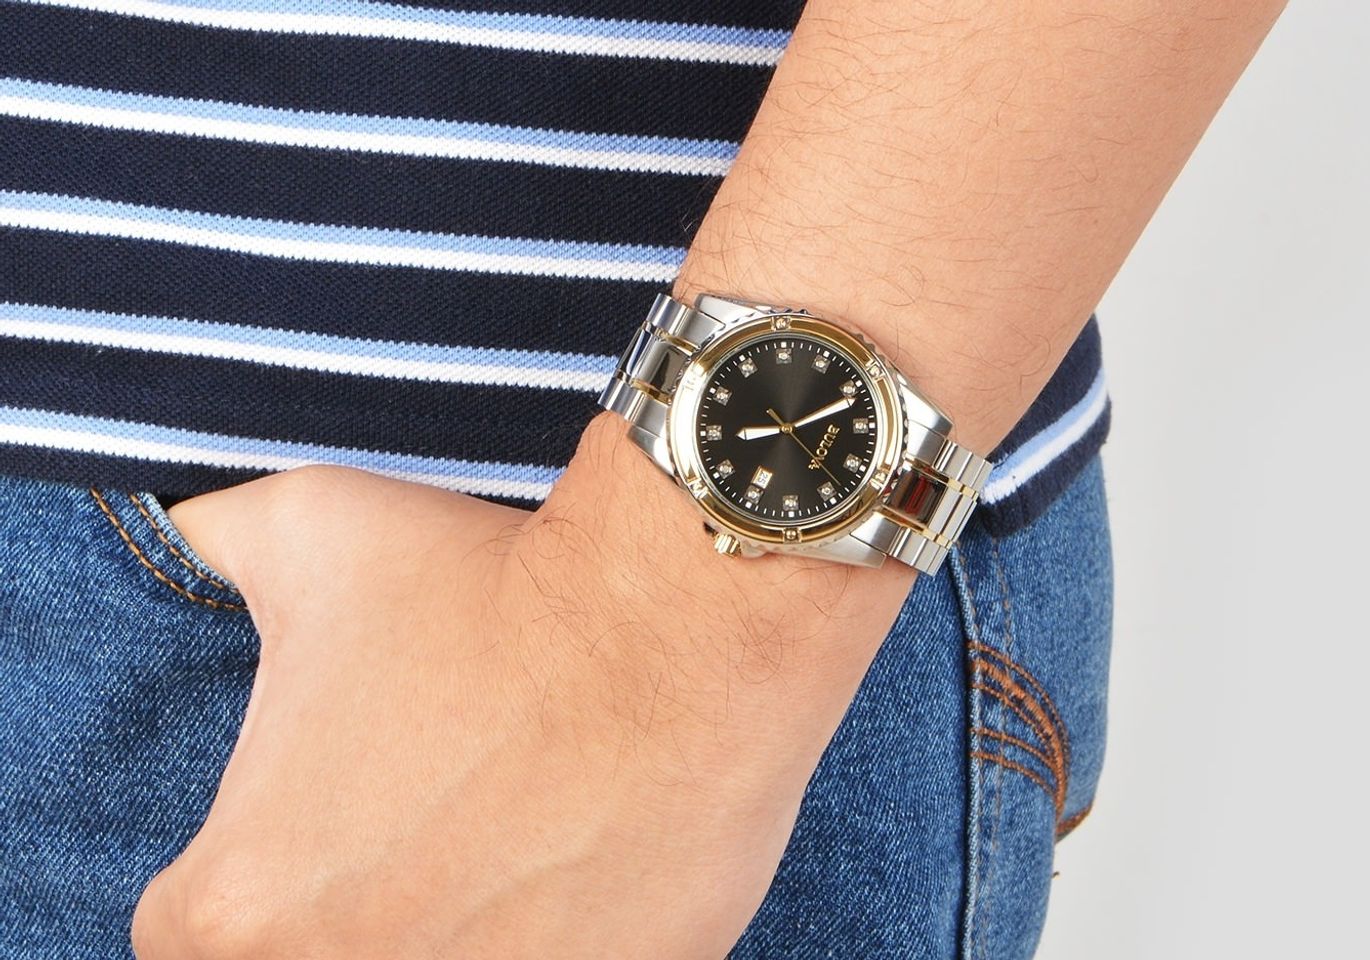 Chiếc đồng hồ Bulova nam 98D122 trên tay sang trọng, lịch lãm